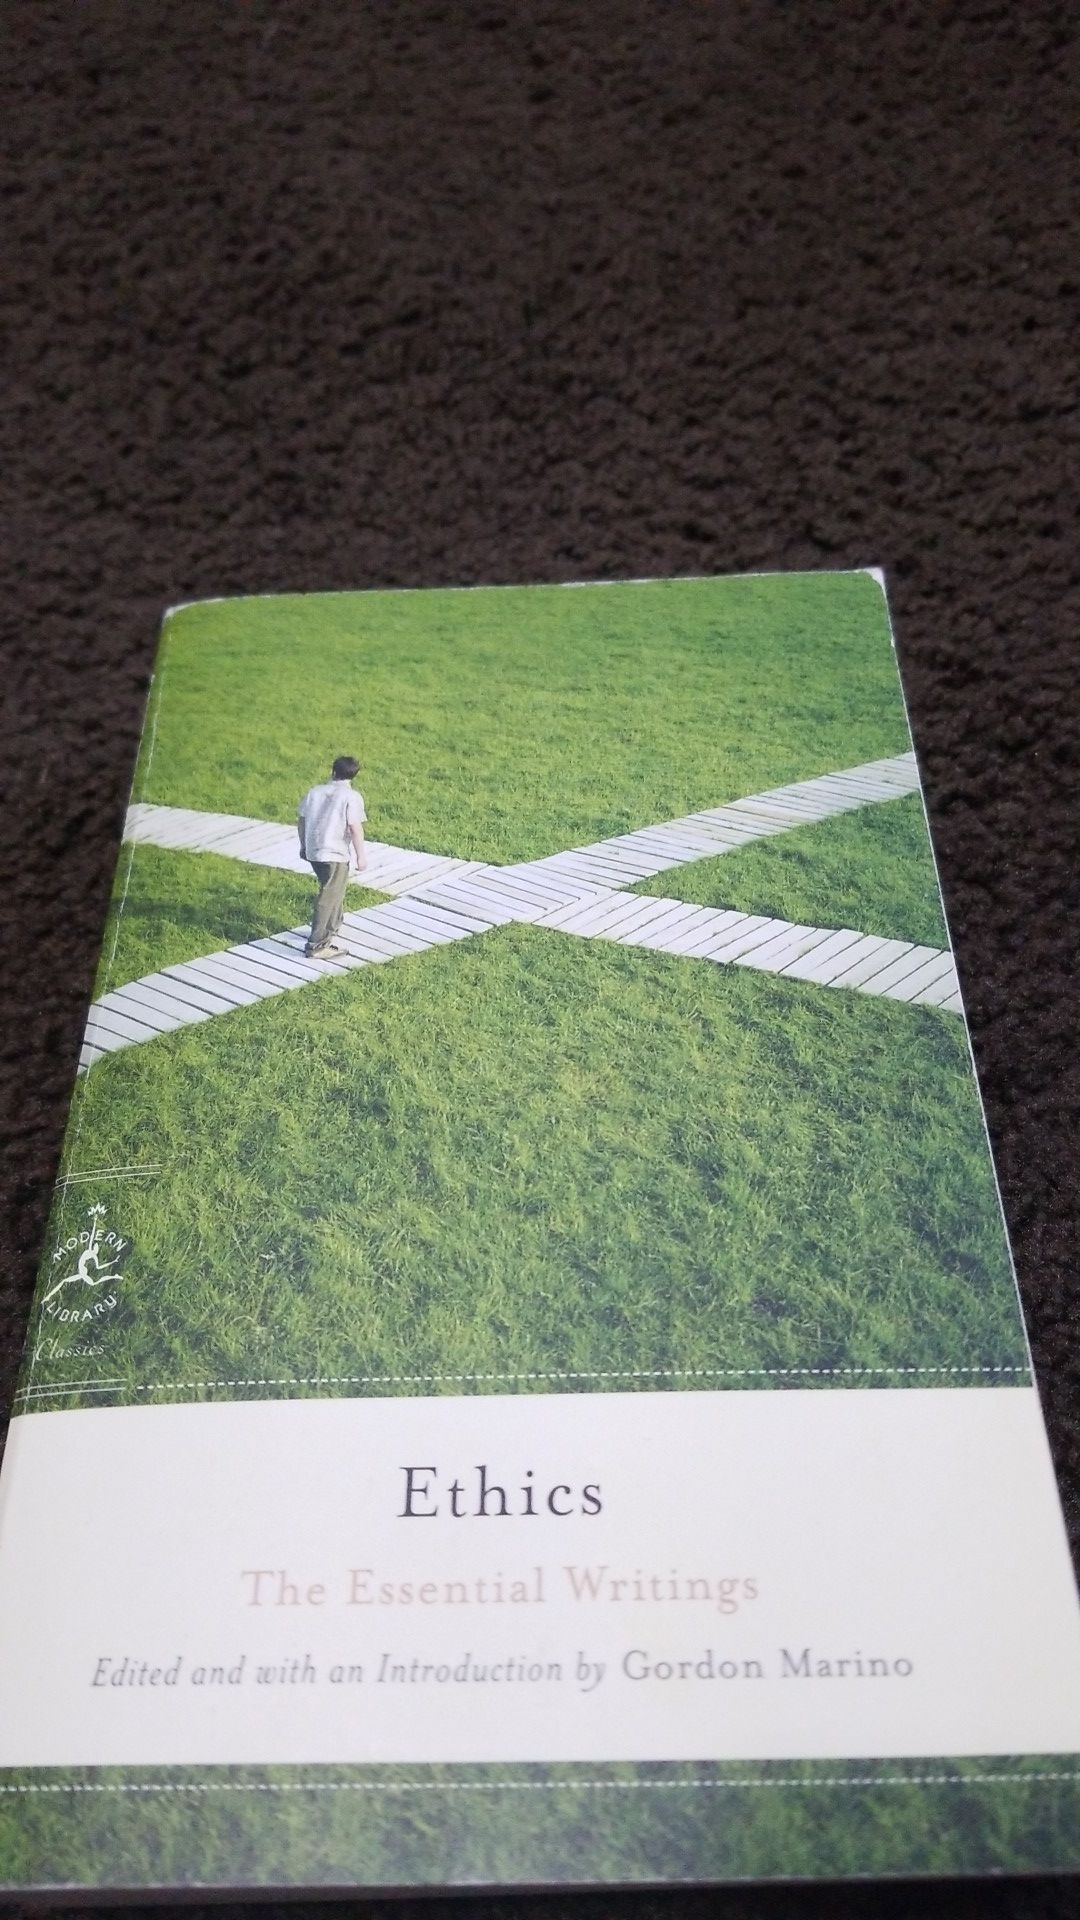 Ethics book